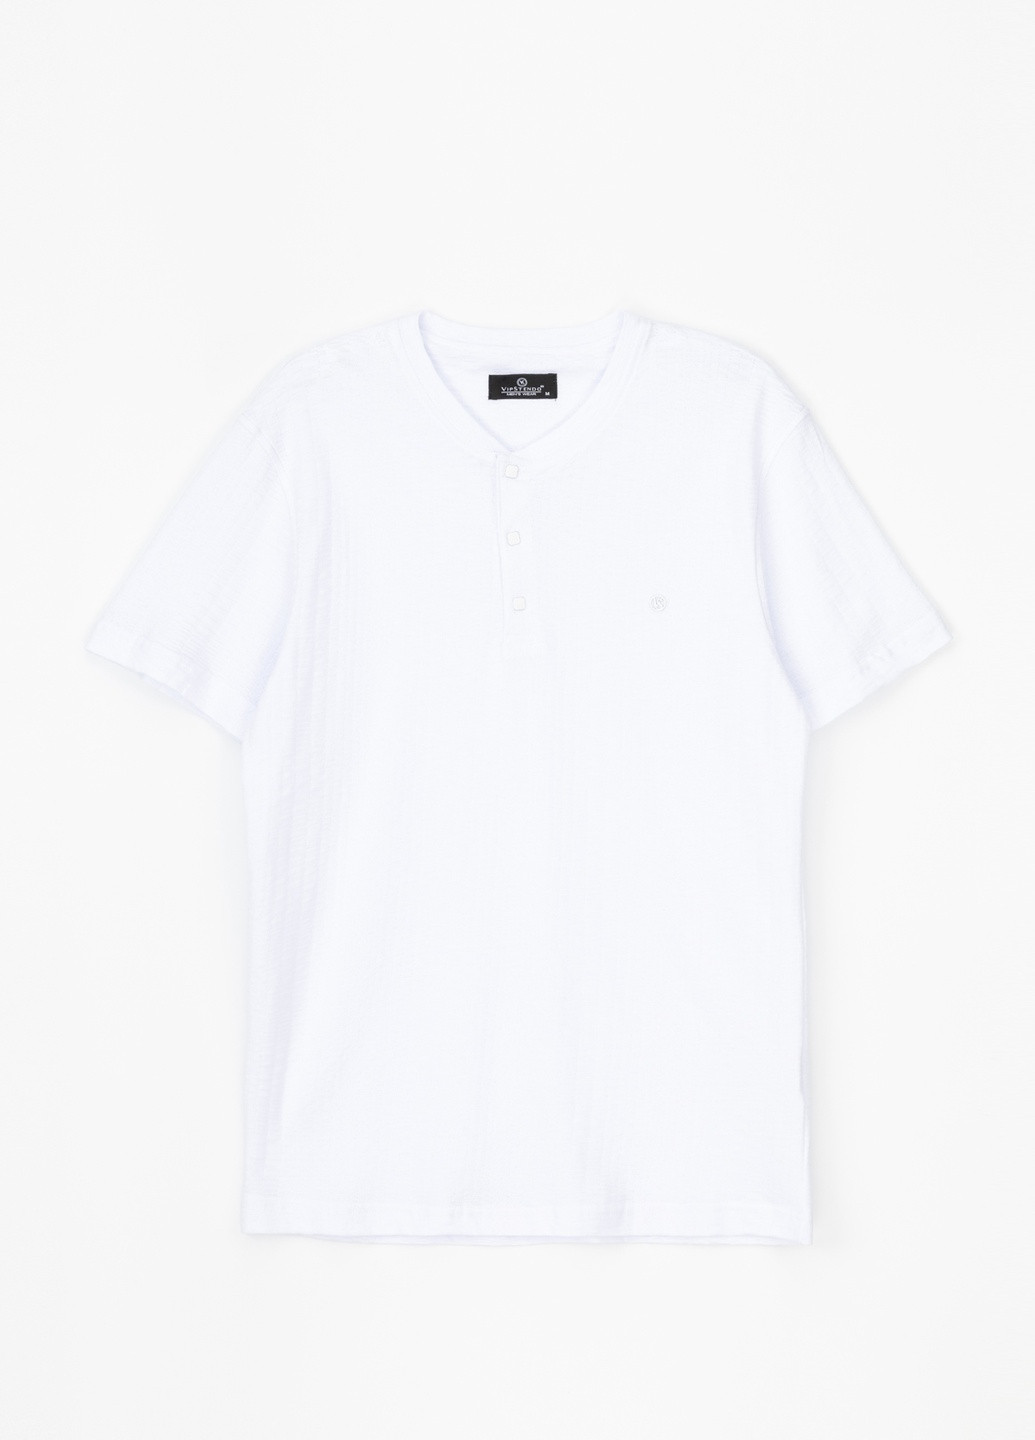 Белая футболка Stendo